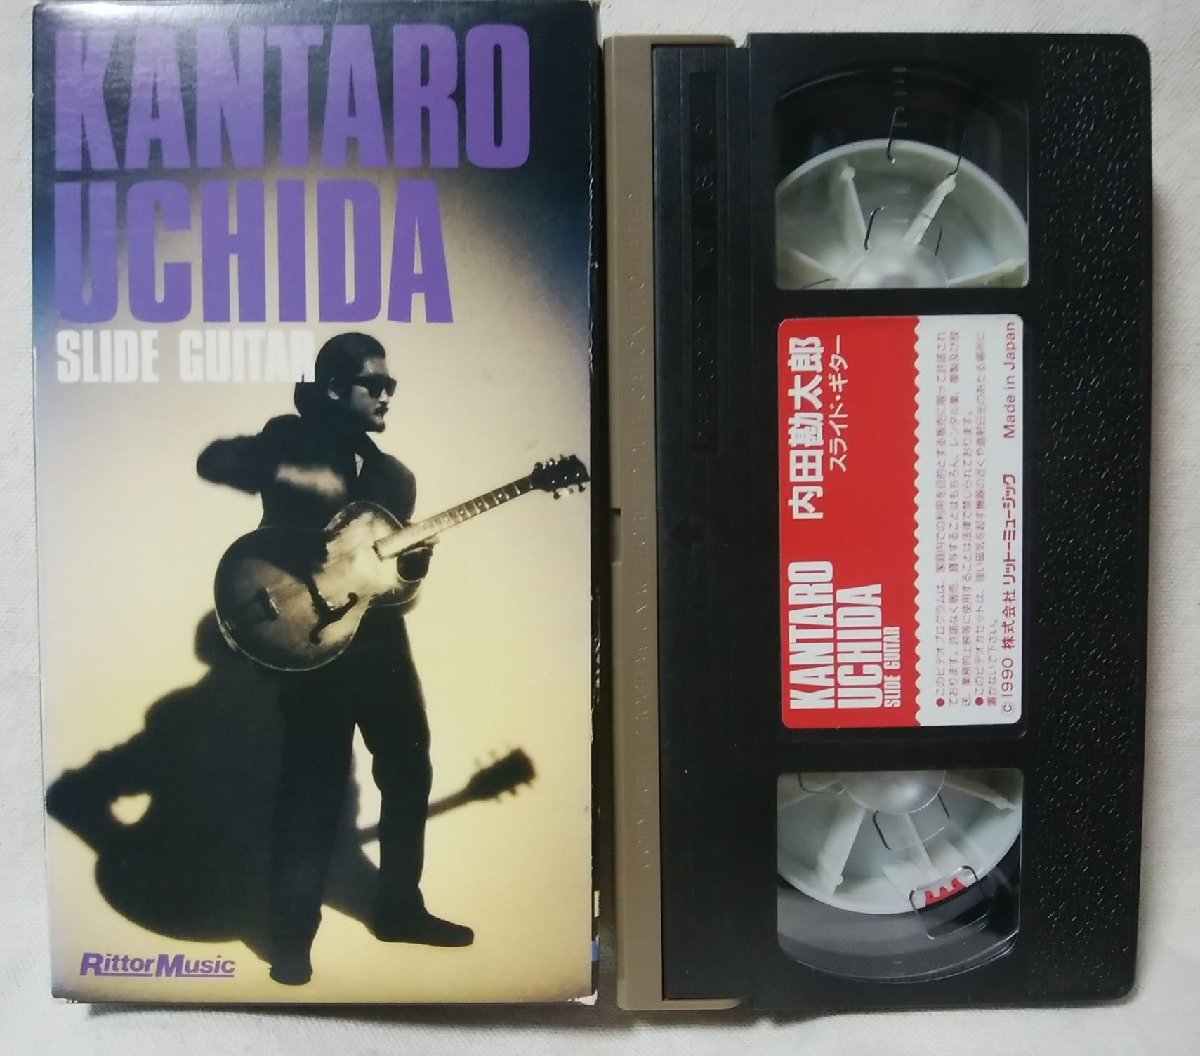 ★★ VHS Kantaro Uchida Slide Guitar ★ Премьер -министр обучения гитаре ★ Видео [9772CDN